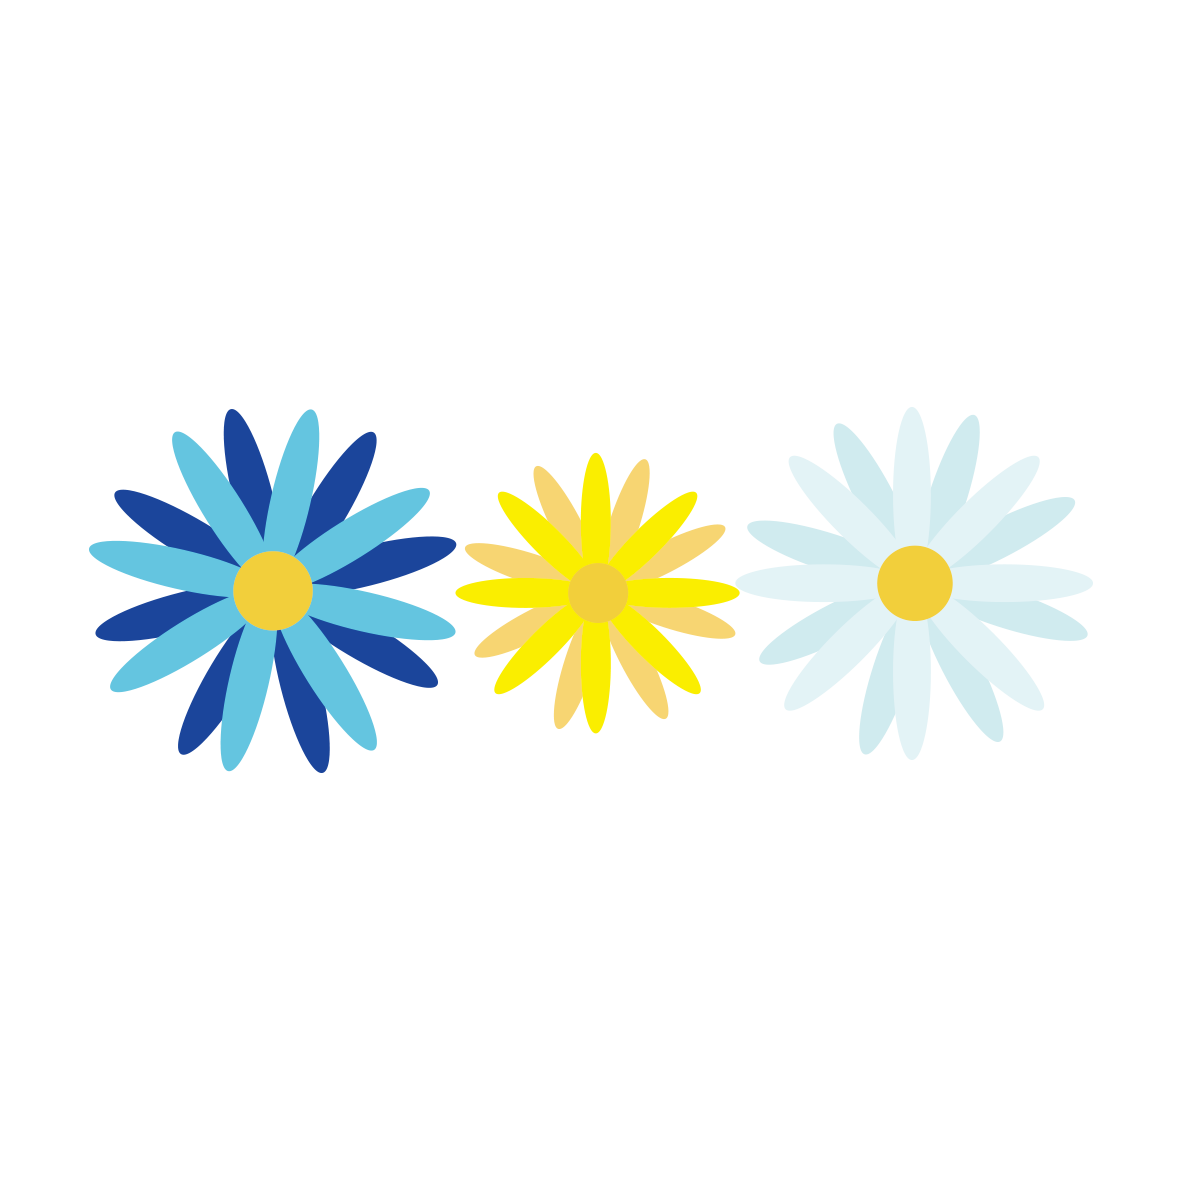 ブルーを基調とした色とりどりのお花がおしゃれでポップなイラスト線です。<br>
ブルーと黄色が知的でクールな印象なので、会社や塾のお知らせにもピッタリです☆
いくつか並べれば長いテキストを飾ることもできます。<br>
こちらのデザインには、フレーム・角パーツ・色違いもございますので用途に応じてお好みの方をご利用ください♡